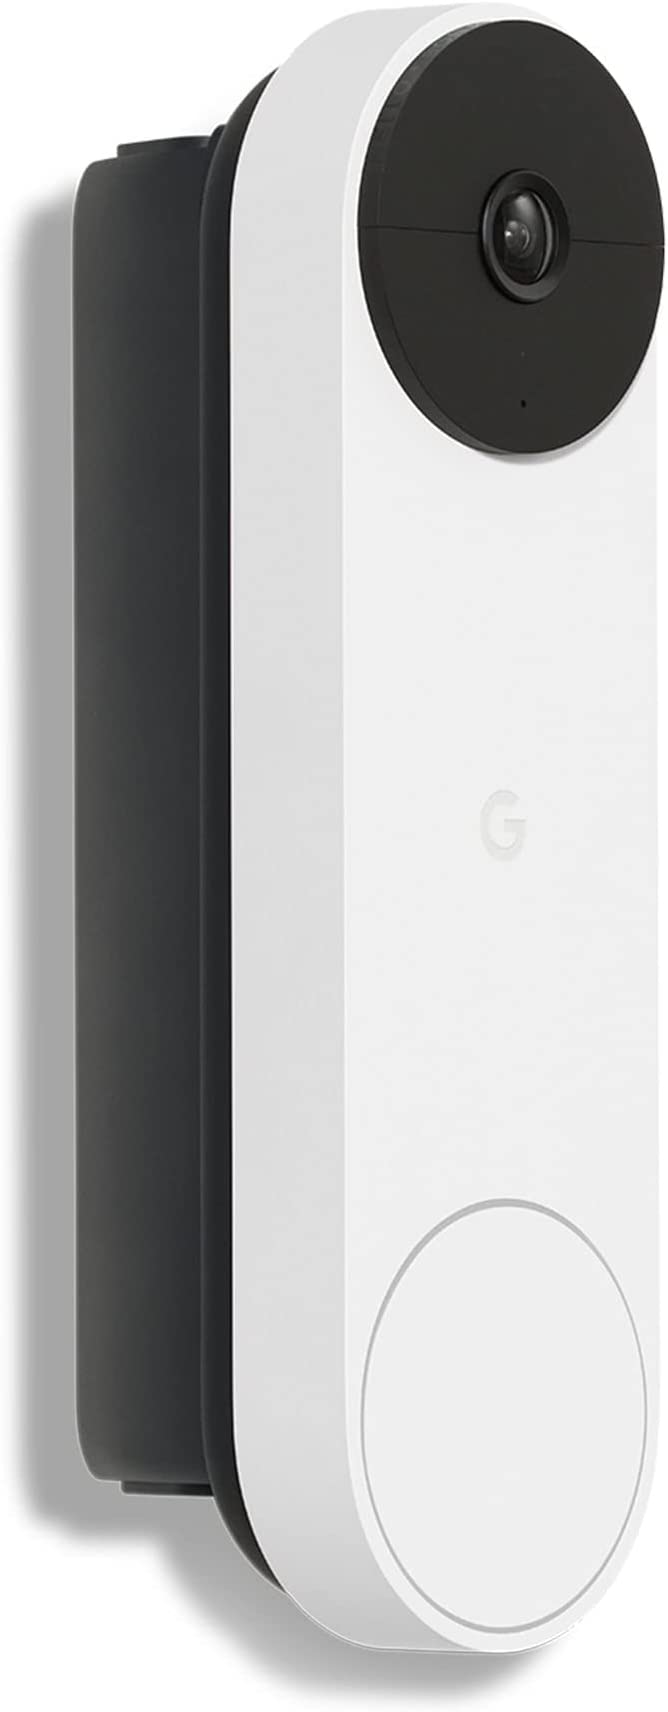 Google Nest Doorbell (Battery) - Wireless Video Doorbell - Smart WiFi Doorbell Camera, Snow